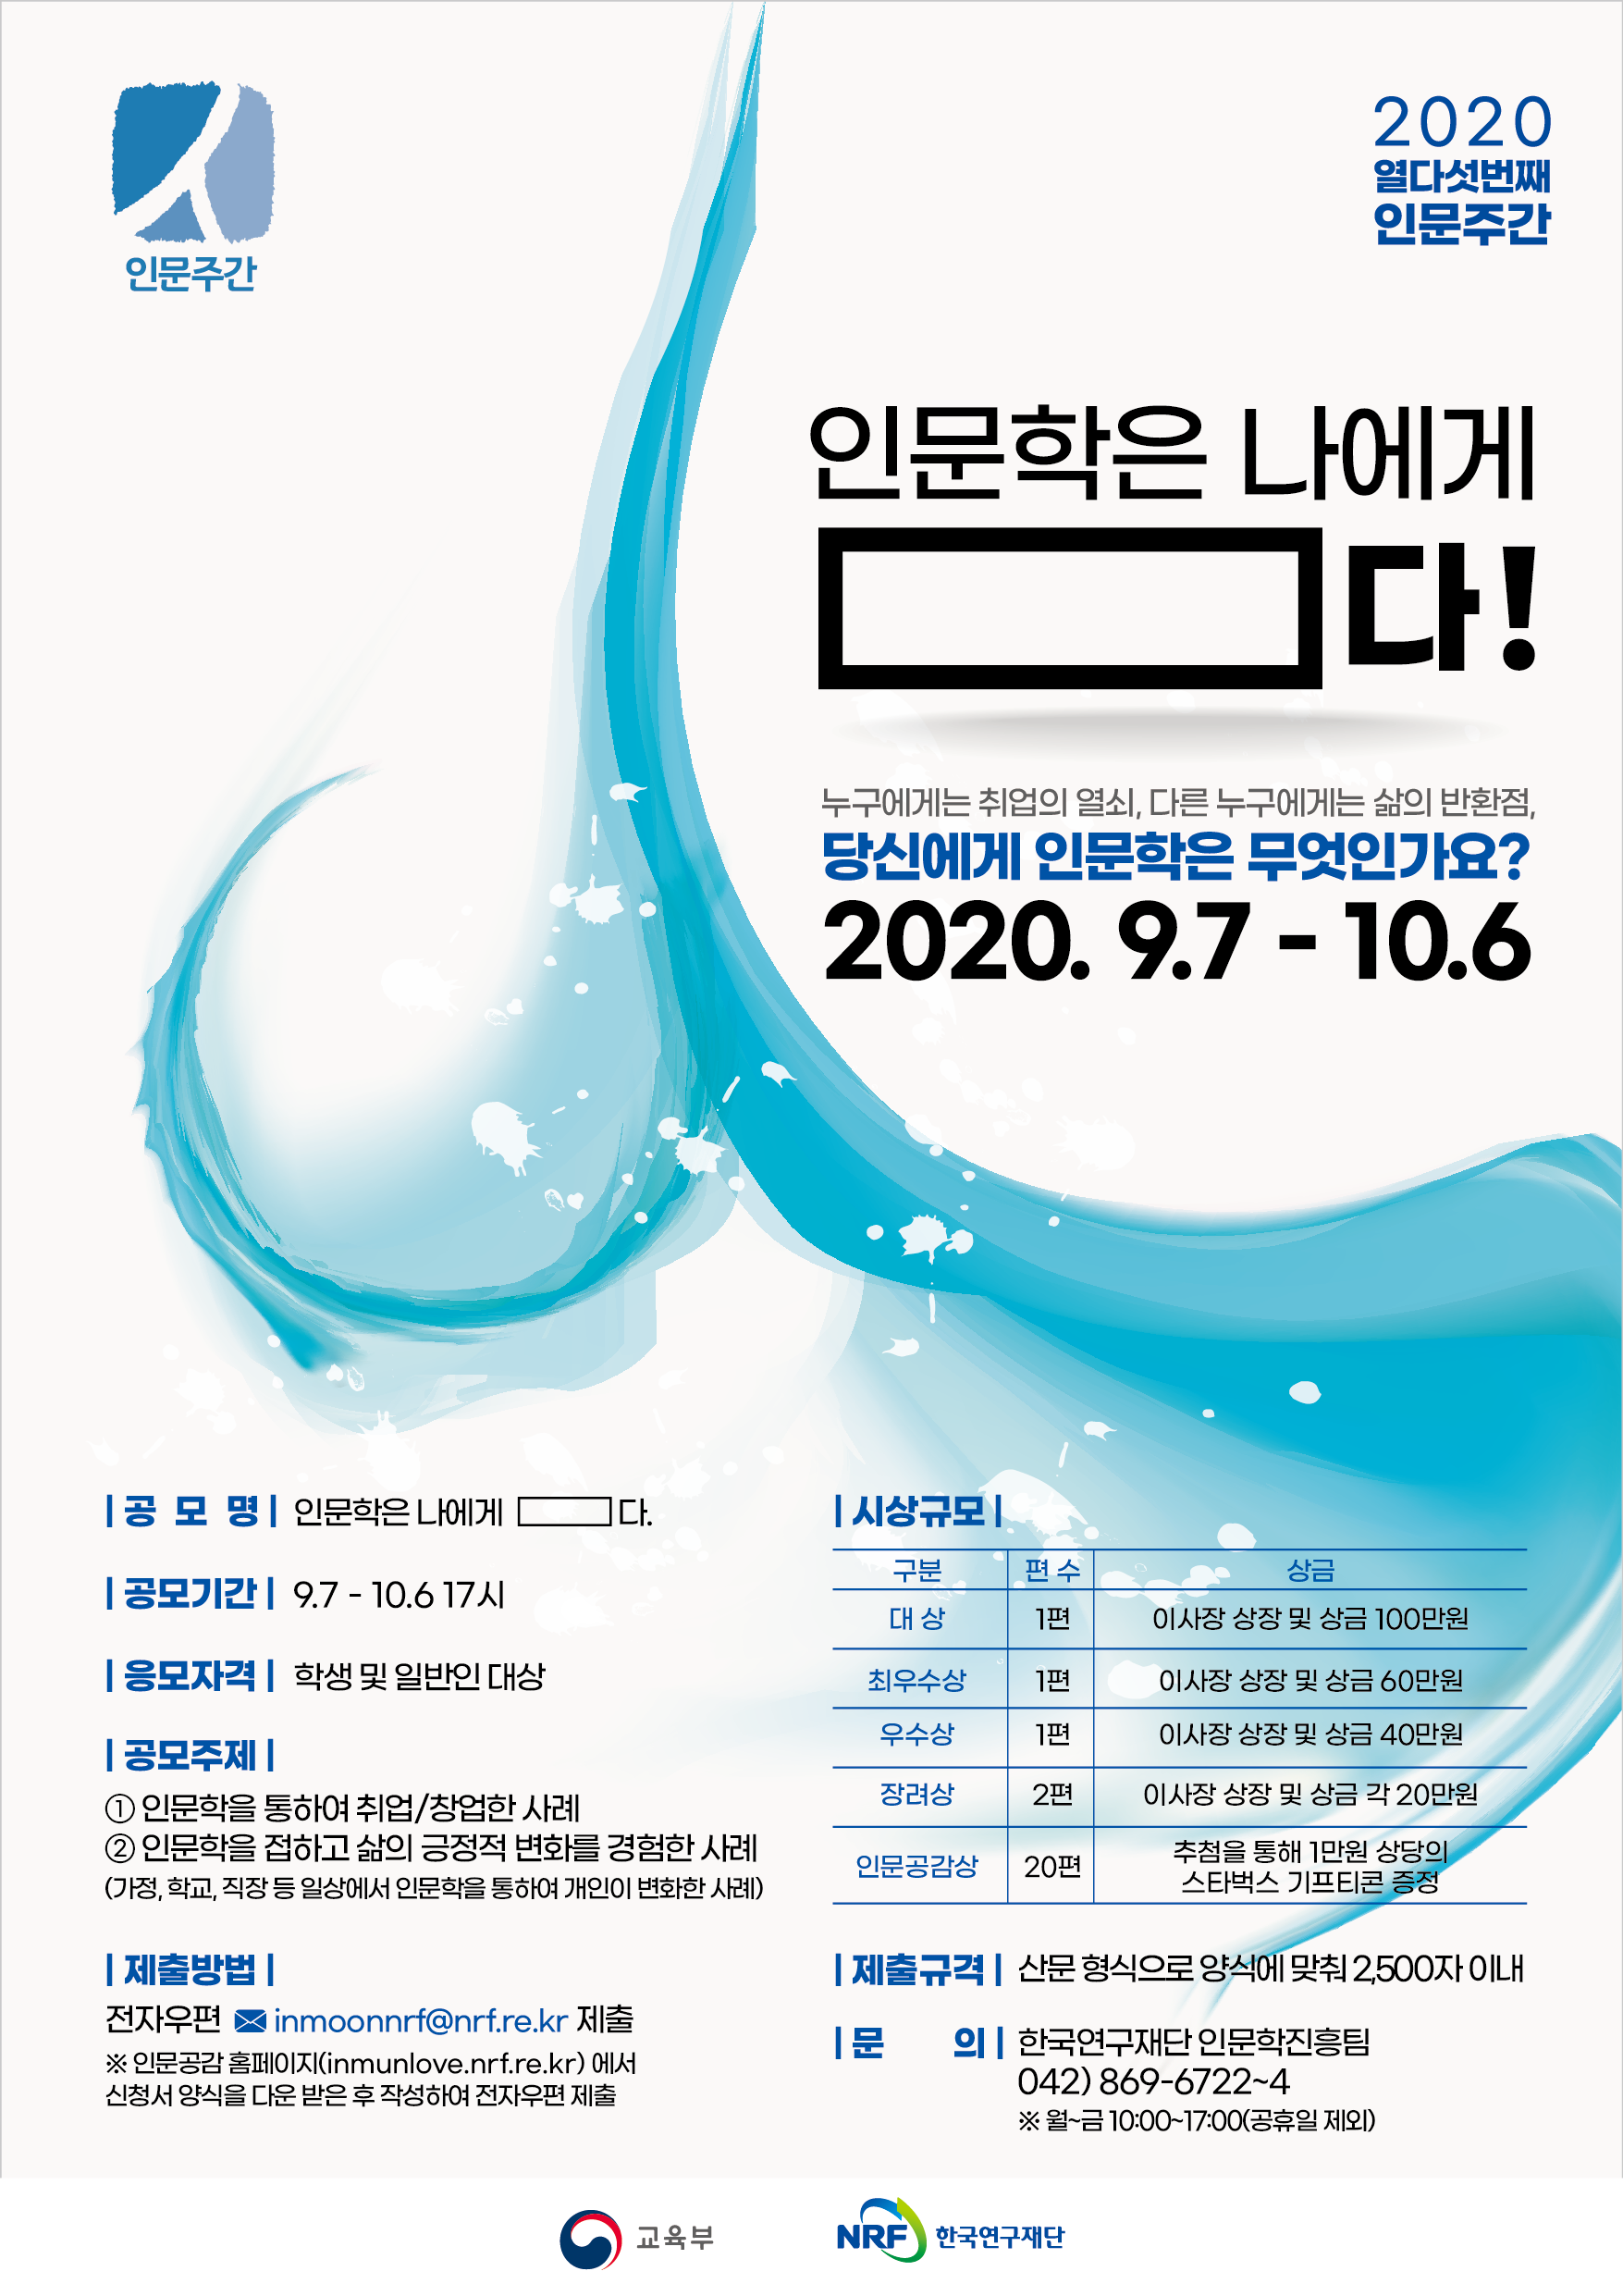 한국연구재단, 2020년 인문학 수기 공모